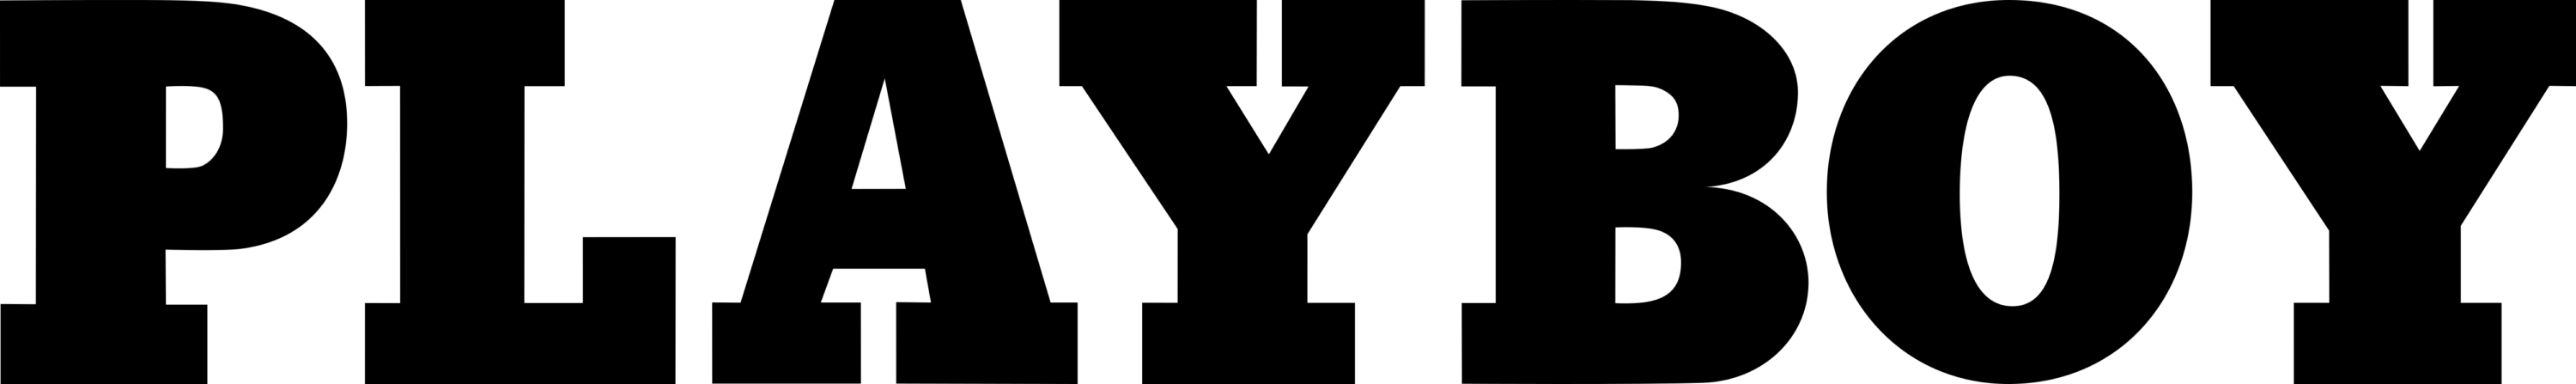 Playboy Logo text